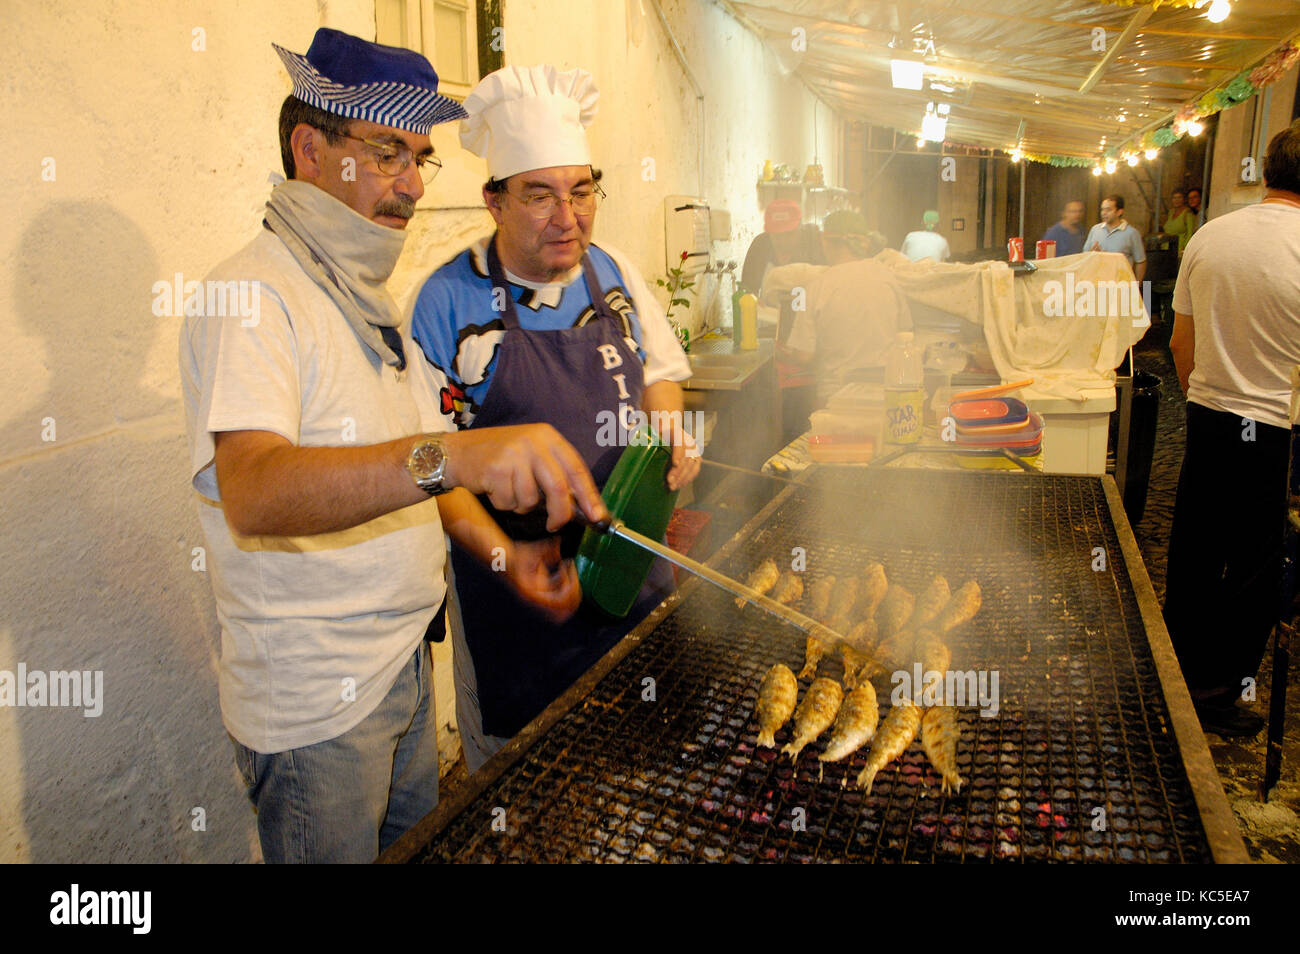 Des sardines grillées aux festivités de Santo António dans le quartier d'Alfama. Lisbonne, Portugal Banque D'Images